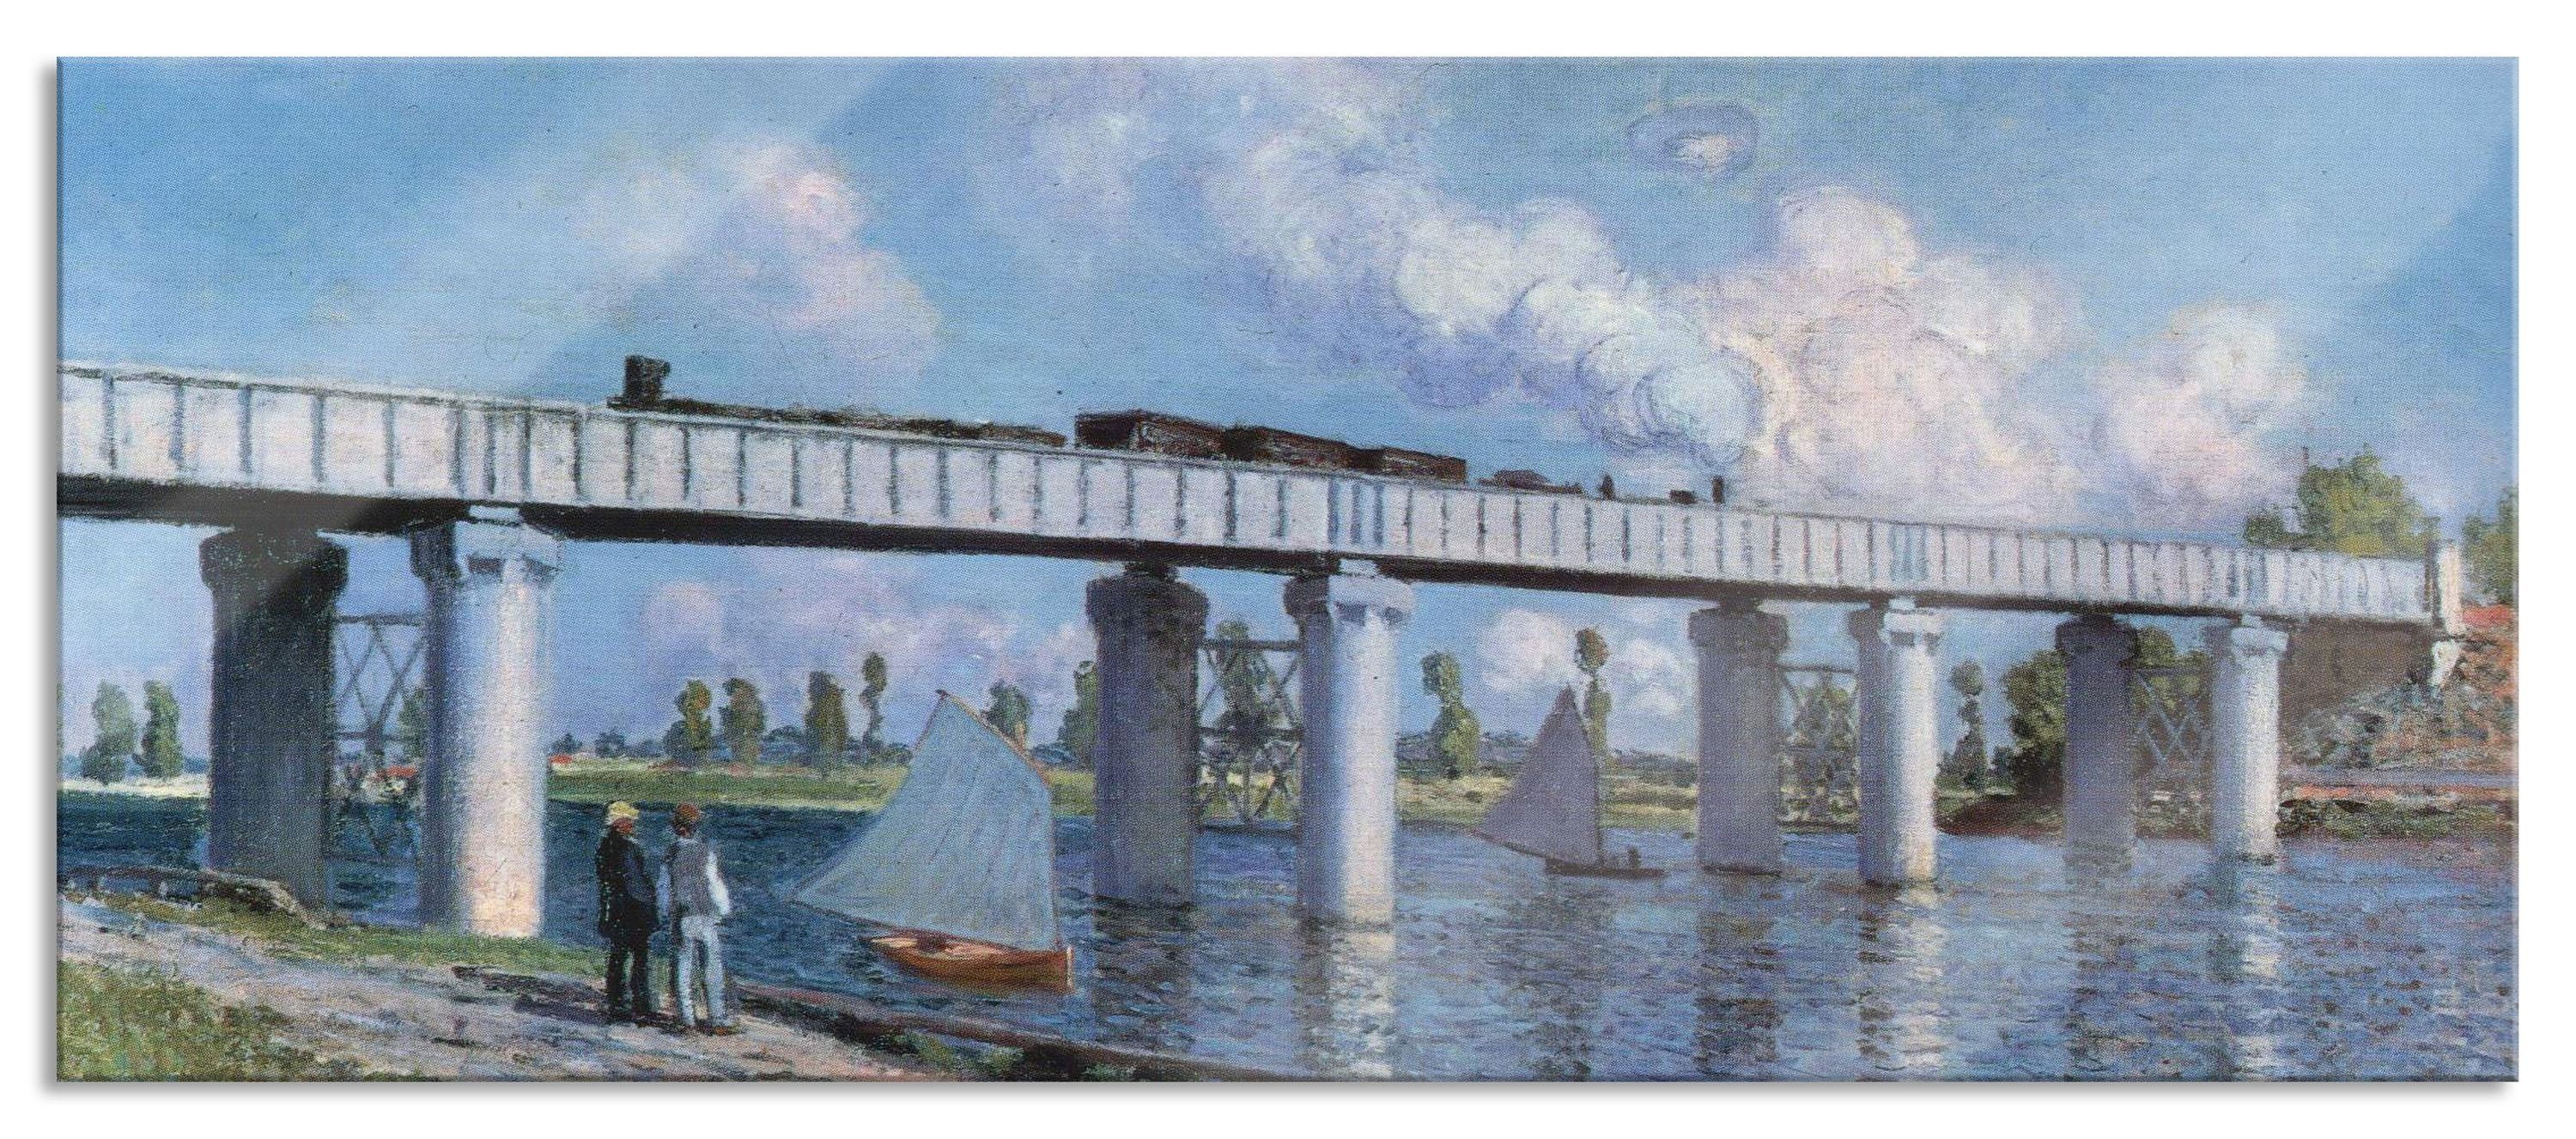 Pixxprint Glasbild Claude Monet - Impression Sonnenaufgang, Claude Monet - Impression Sonnenaufgang (1 St), Glasbild aus Echtglas, inkl. Aufhängungen und Abstandshalter